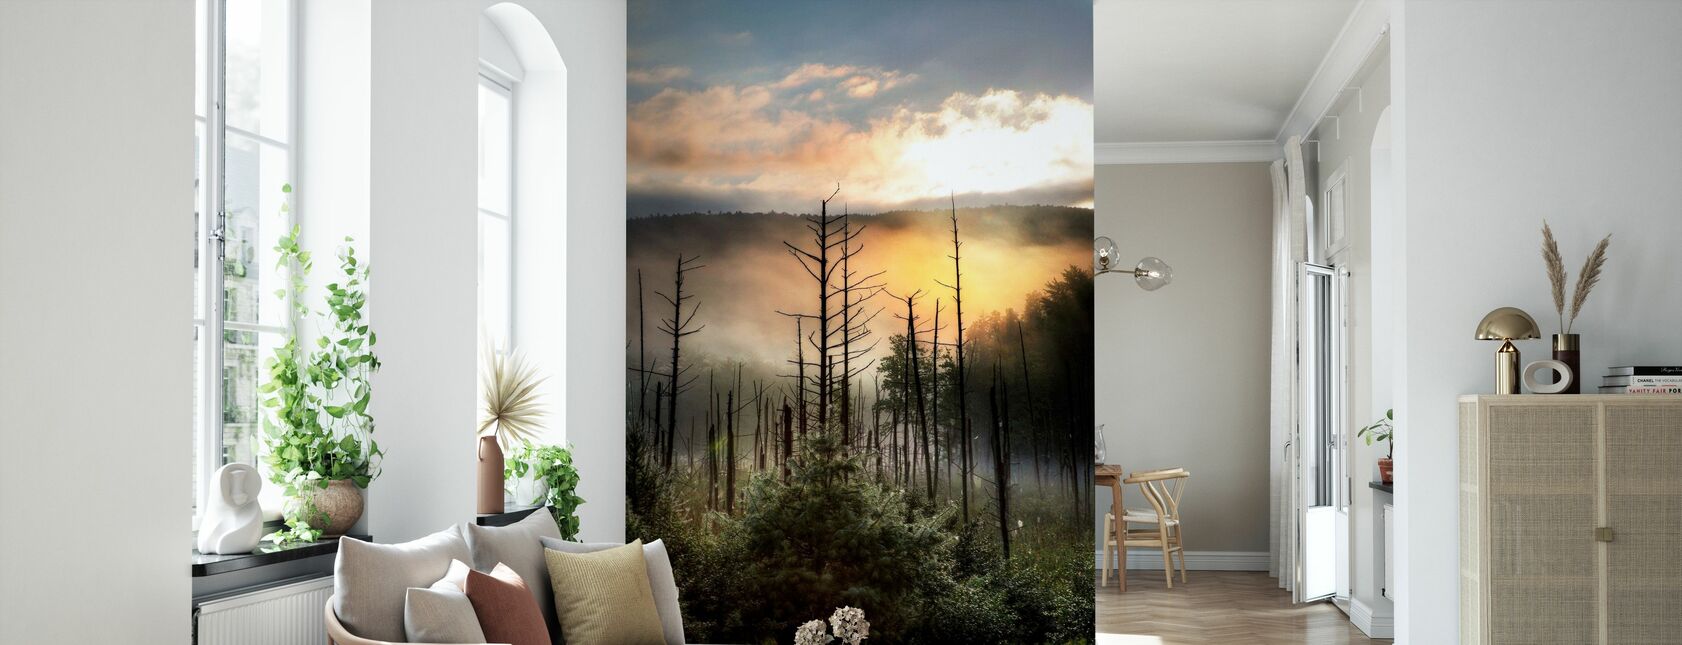 Vermont Swamp at Sunrise - Wallpaper - Living Room